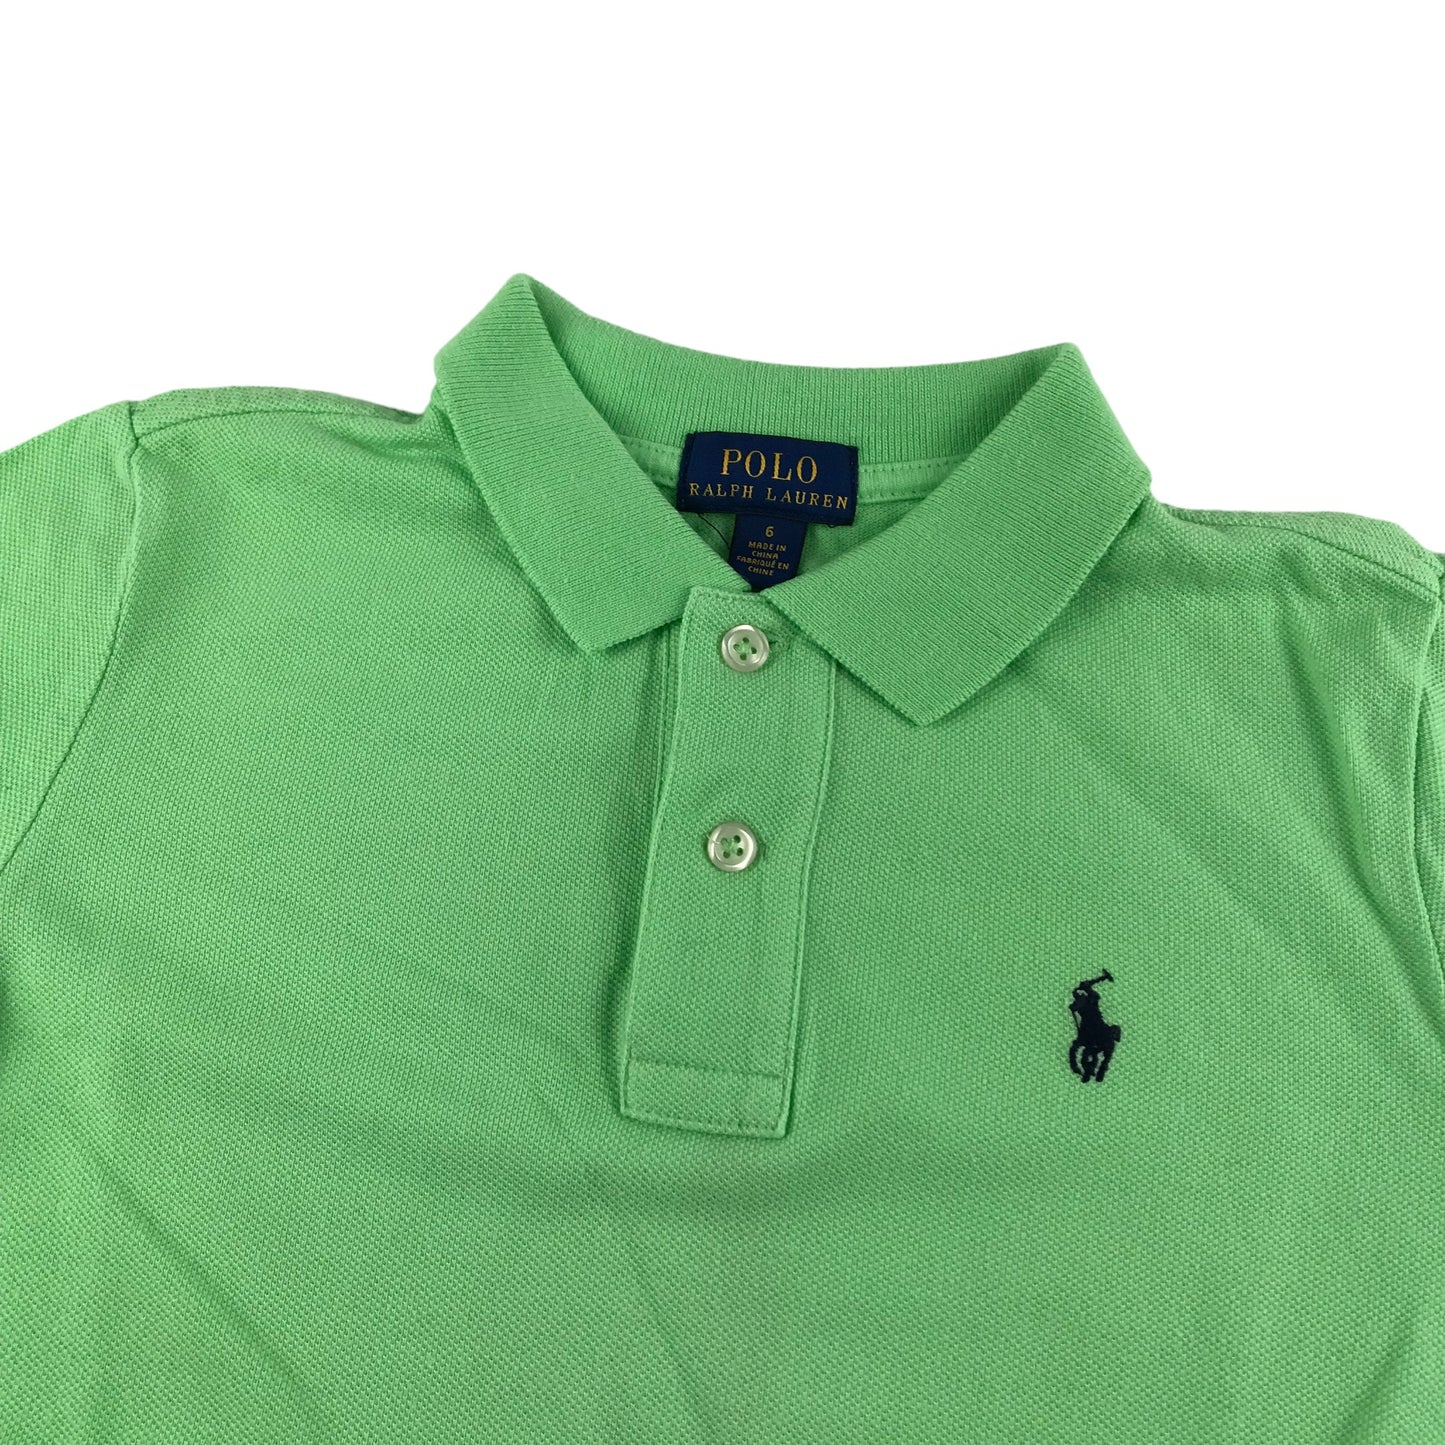 Ralph Lauren Polo Shirt Age 6 Green Short Sleeve Cotton